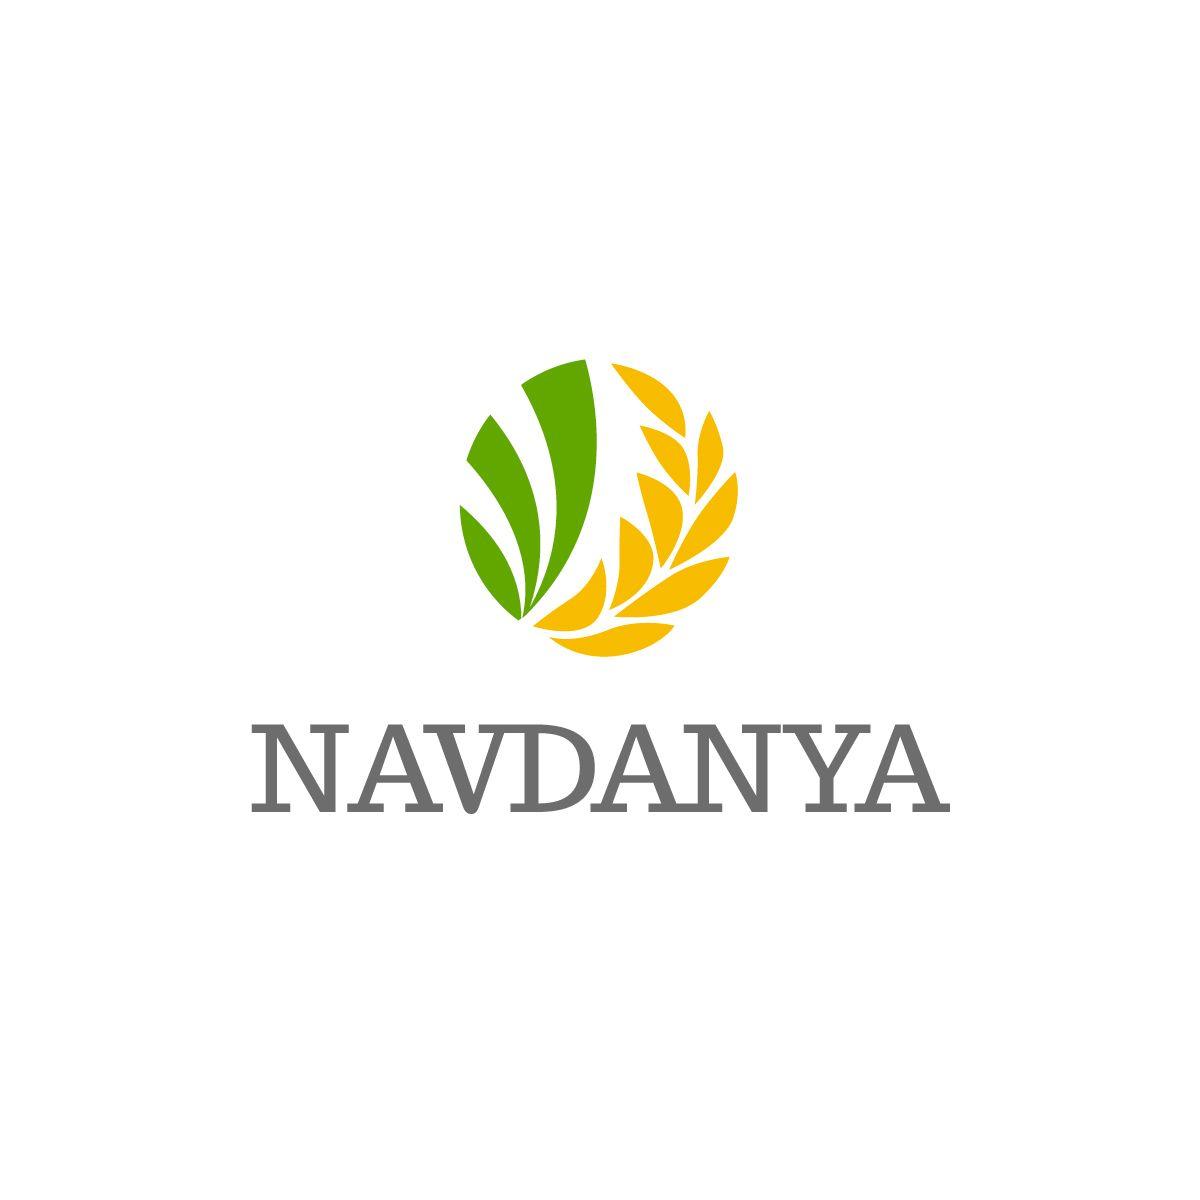 Rice Leaf Logo - Elegant, Playful, Business Logo Design for Navdanya by AlexDev ...